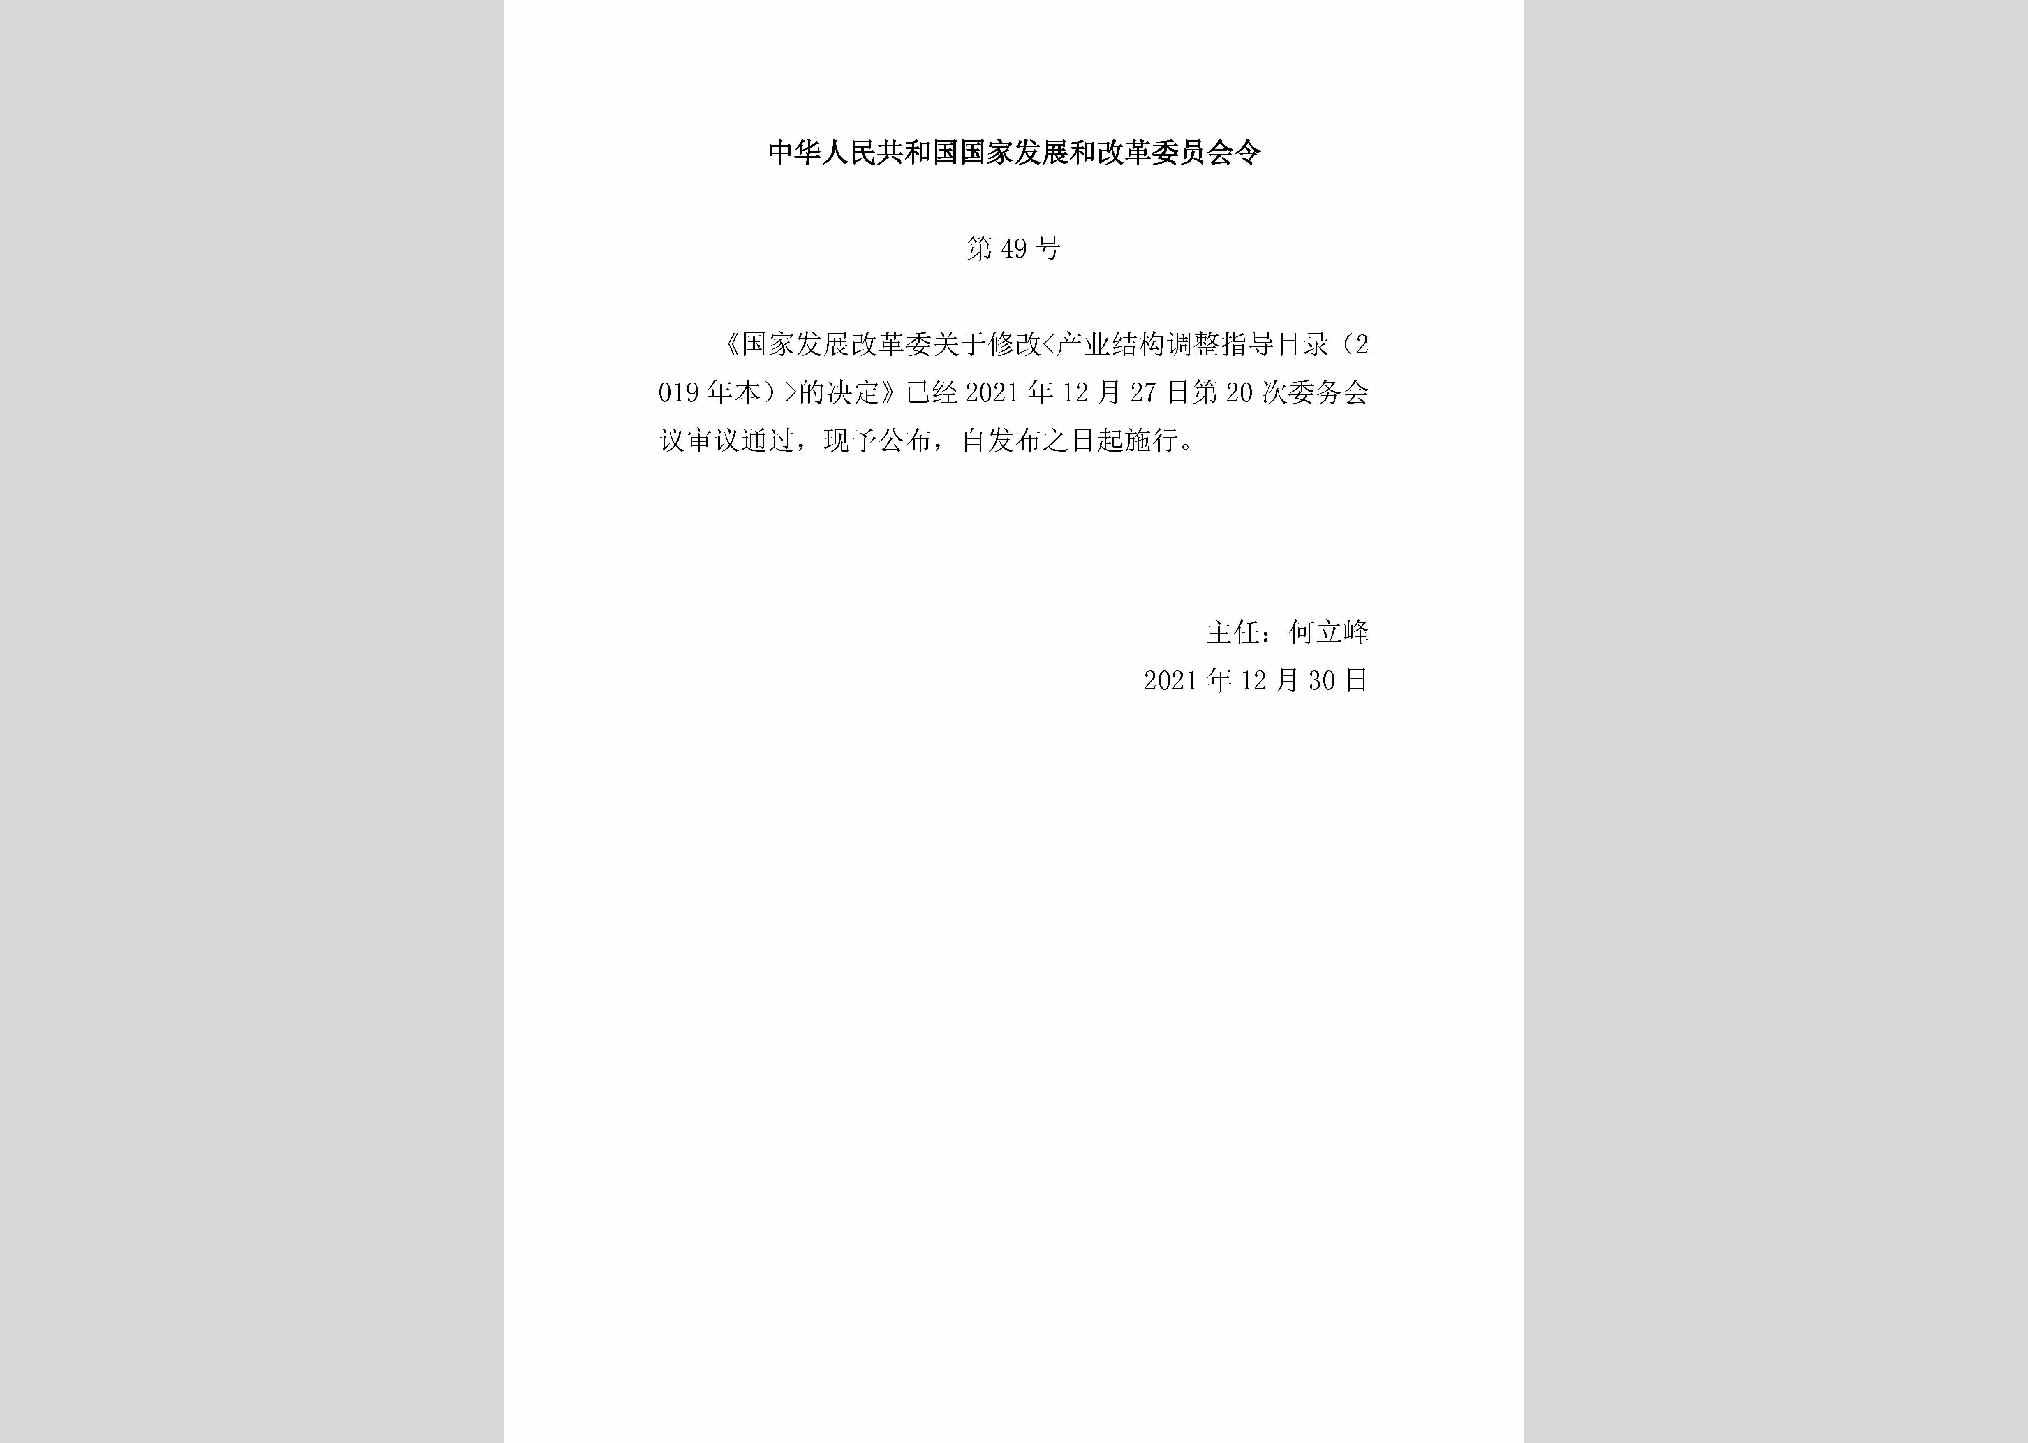 中华人民共和国国家发展和改革委员会令第49号：国家发展改革委关于修改《产业结构调整指导目录（2019年本）》的决定